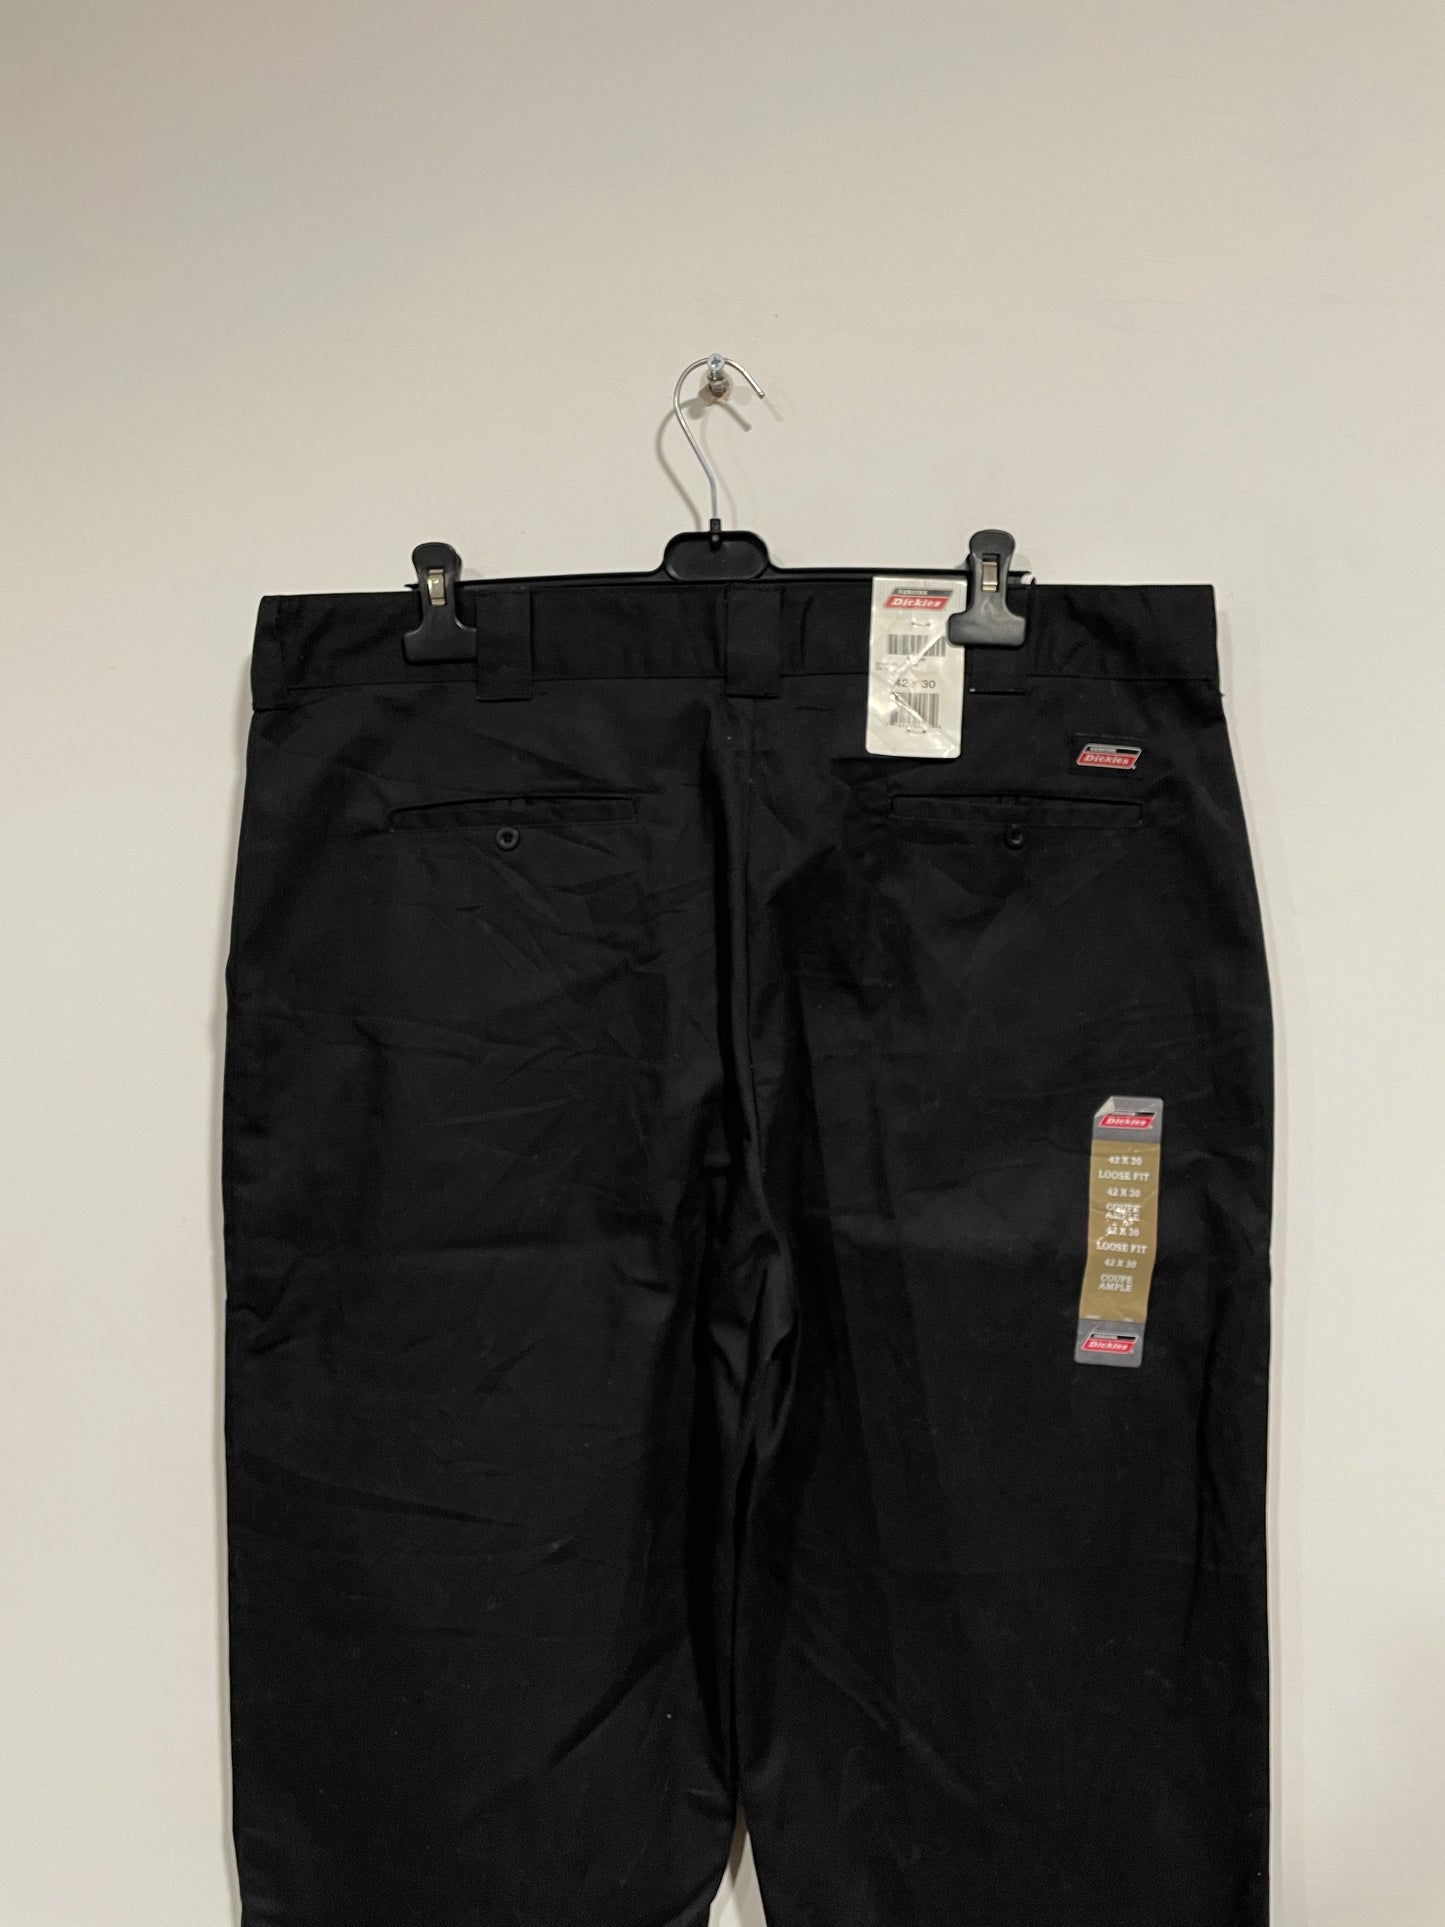 Pantalone Dickies nuovo con cartellino (B202)